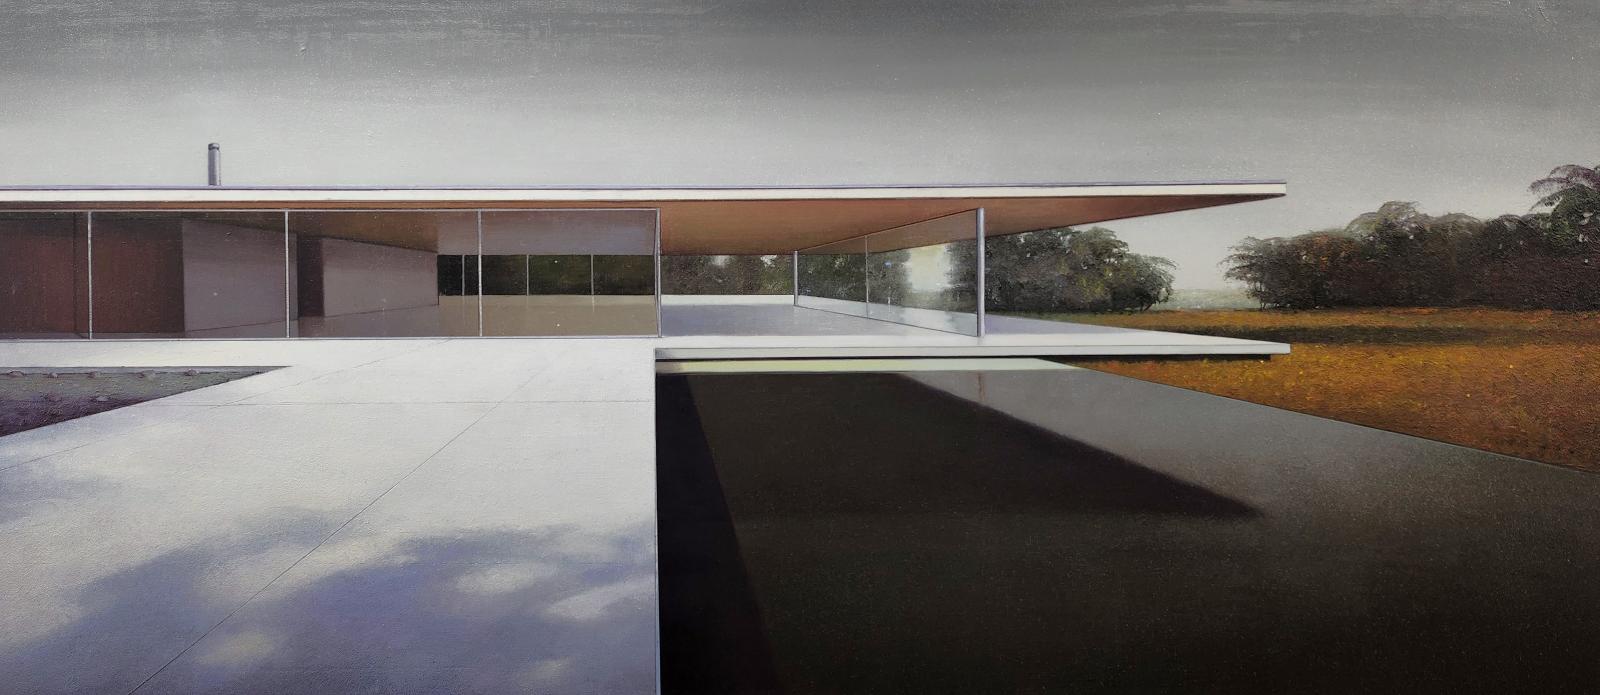 Jens Hausmann, modern house Nr. 40 - Dämmerung, Architekturmalerei, 2023, Öl auf Leinwand, 80 cm x 180 cm, Preis auf Anfrage, Galerie Cyprian Brenner